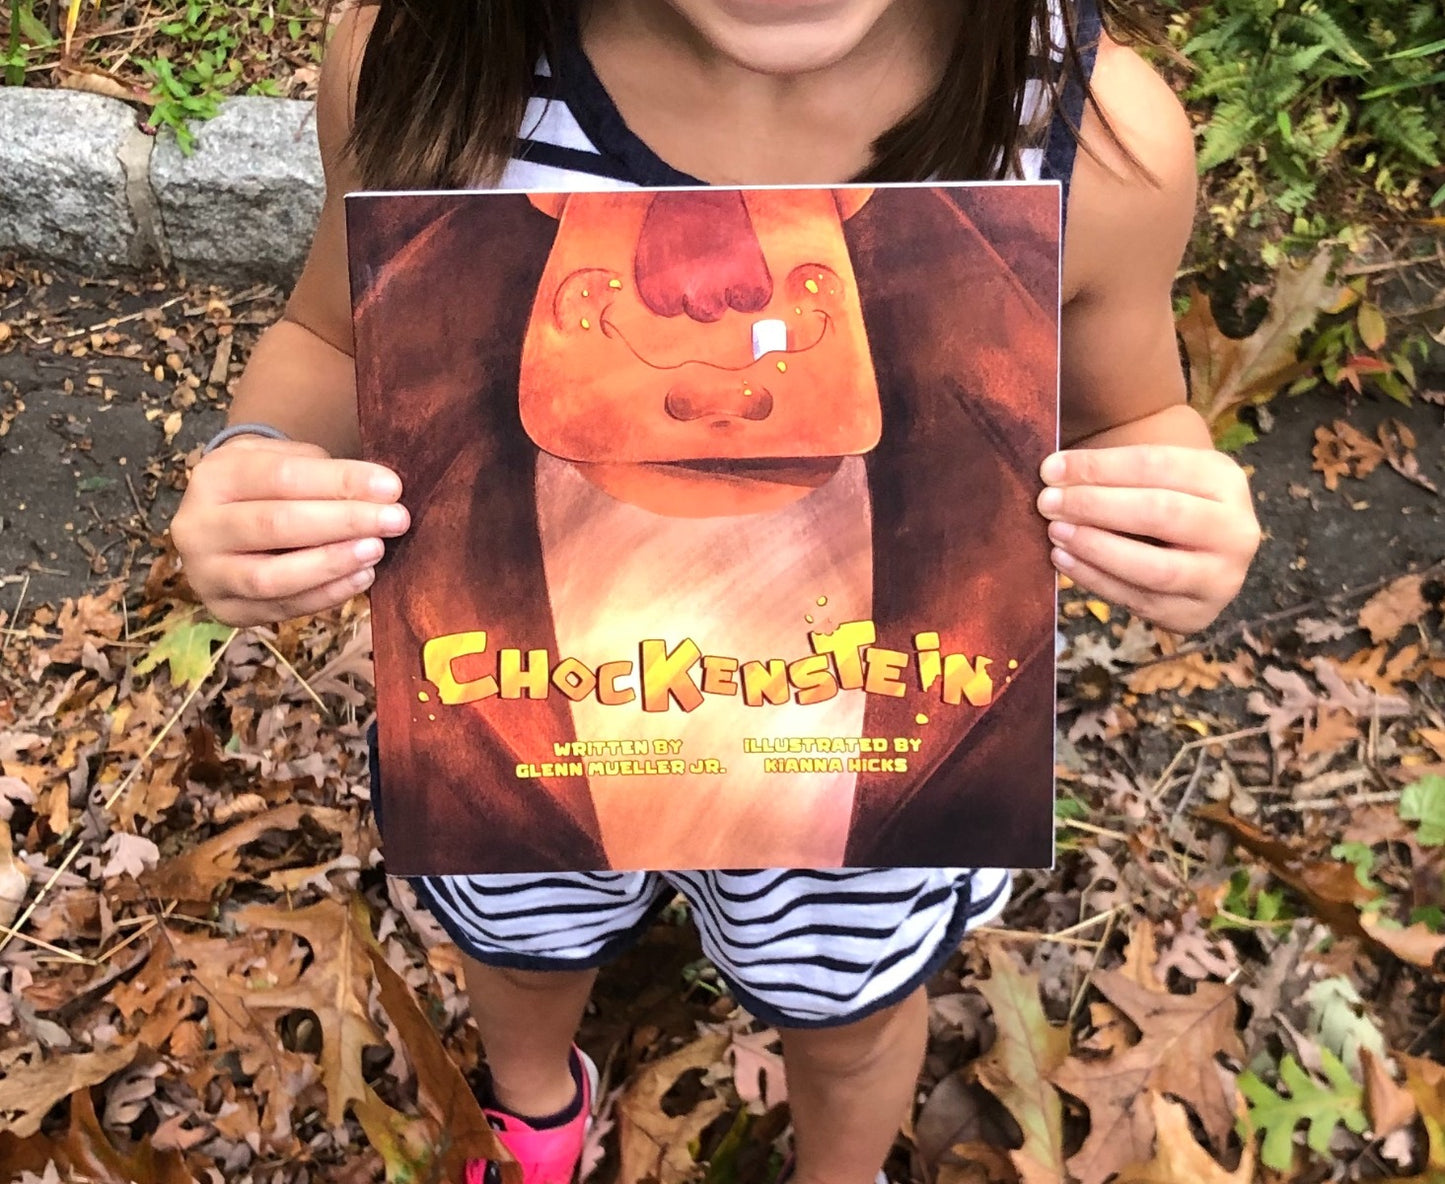 Chockenstein Illustrated Childrens Book - Mueller Chocolate Co.